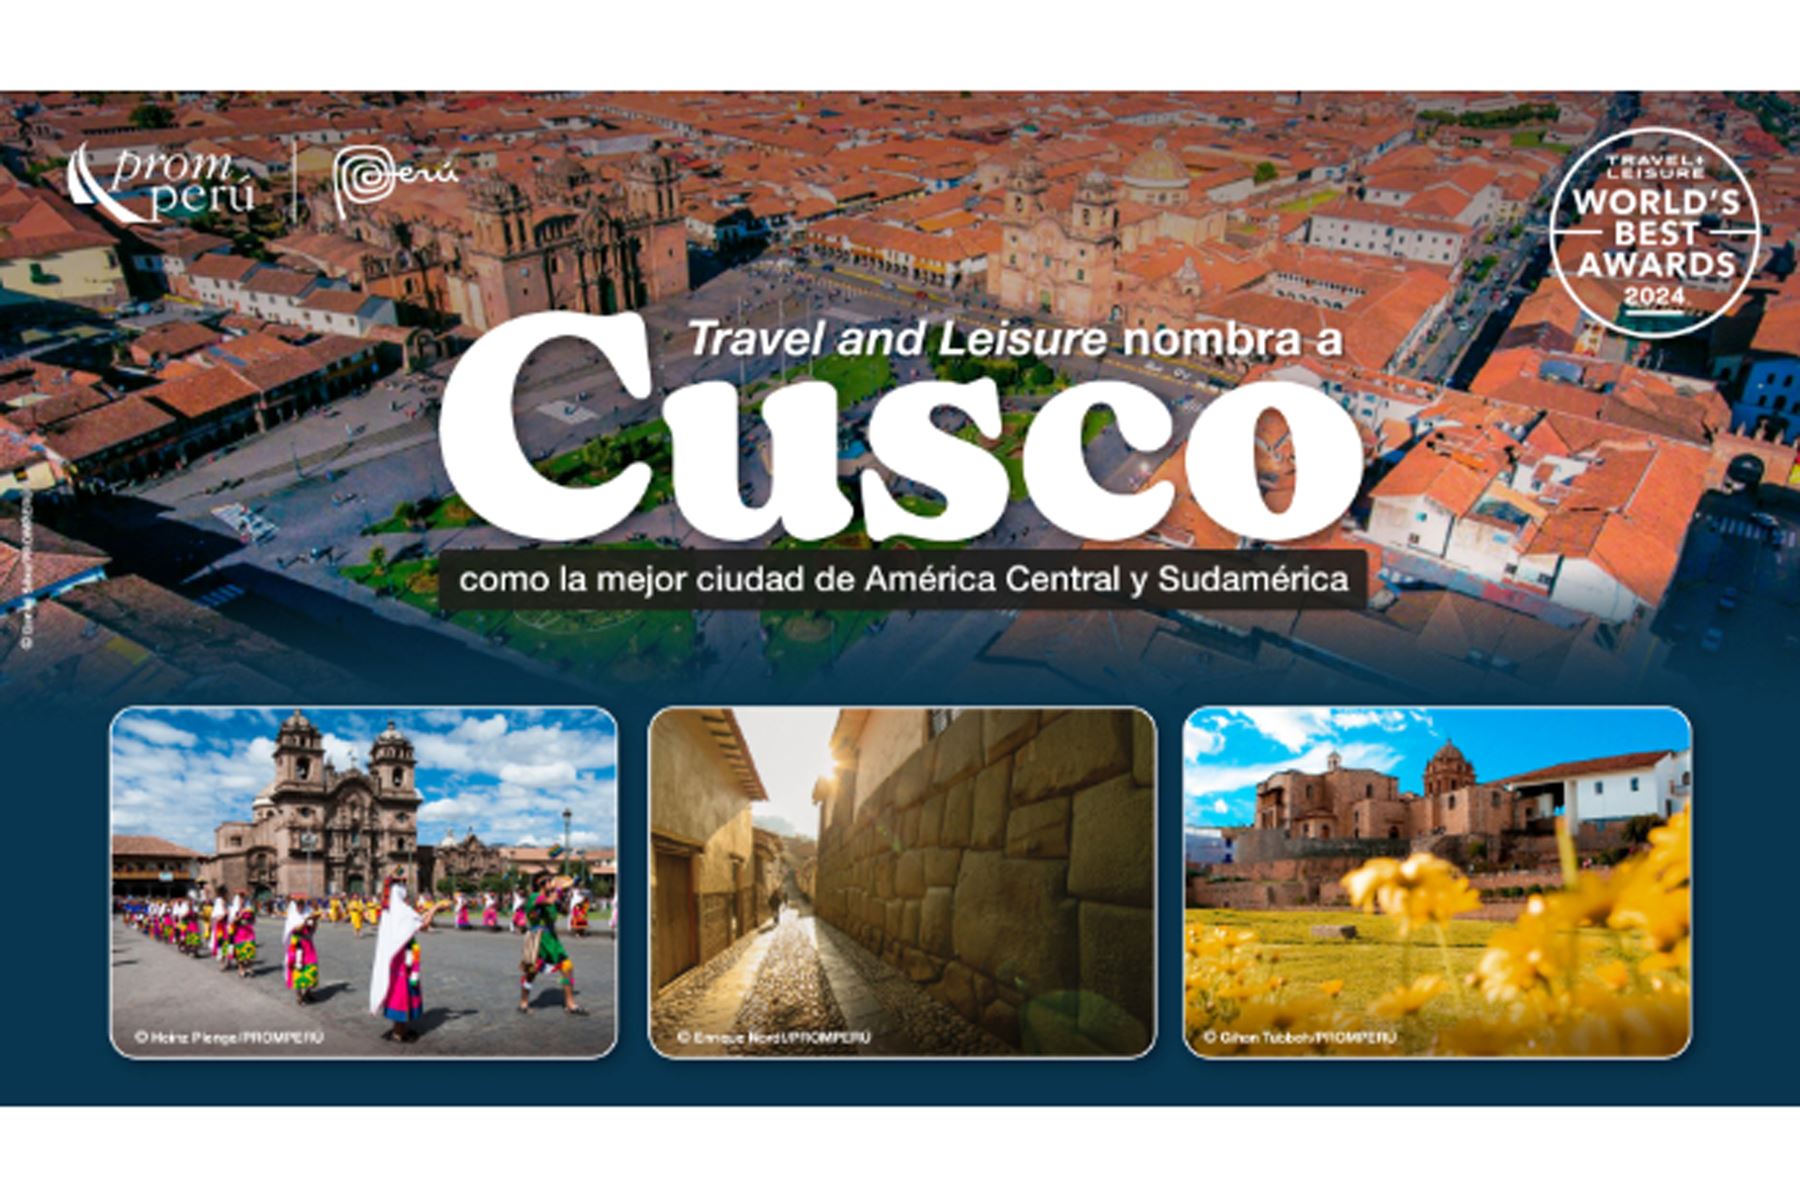 La revista estadounidense Travel and Leisure nombra al Cusco como la mejor ciudad de América Central y Sudamérica. Foto: ANDINA/PromPerú